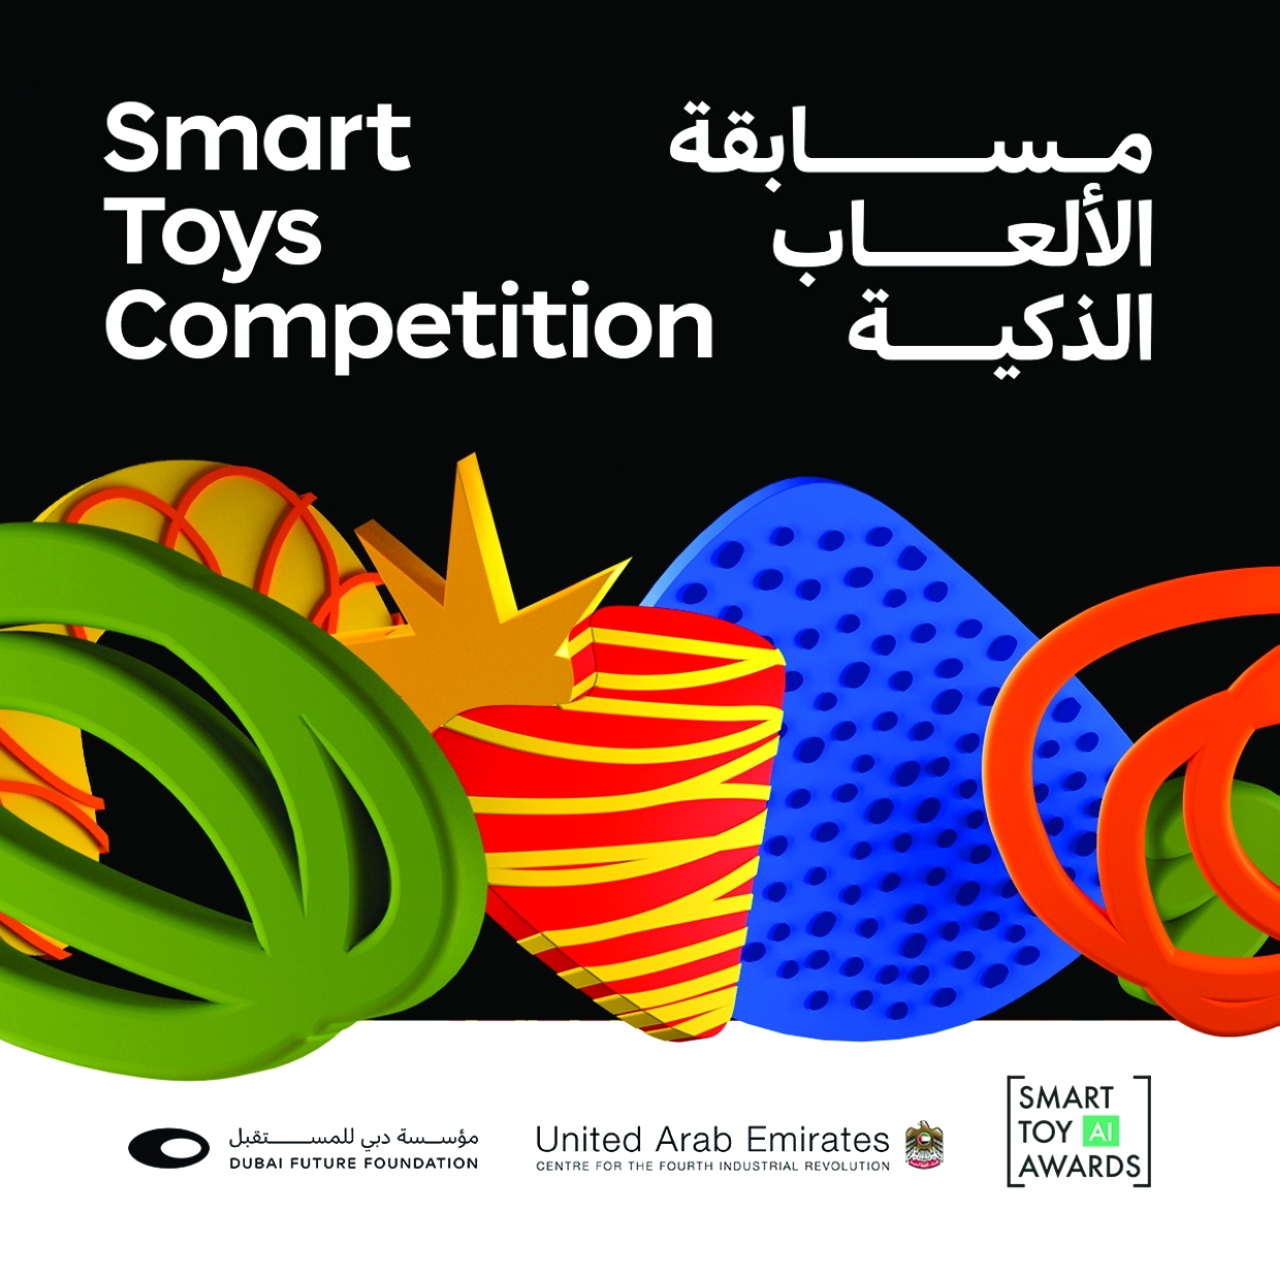 الإمارات تدعو لتصميم «ألعاب ذكية»  تنمي مهارات الأطفال حول العالم